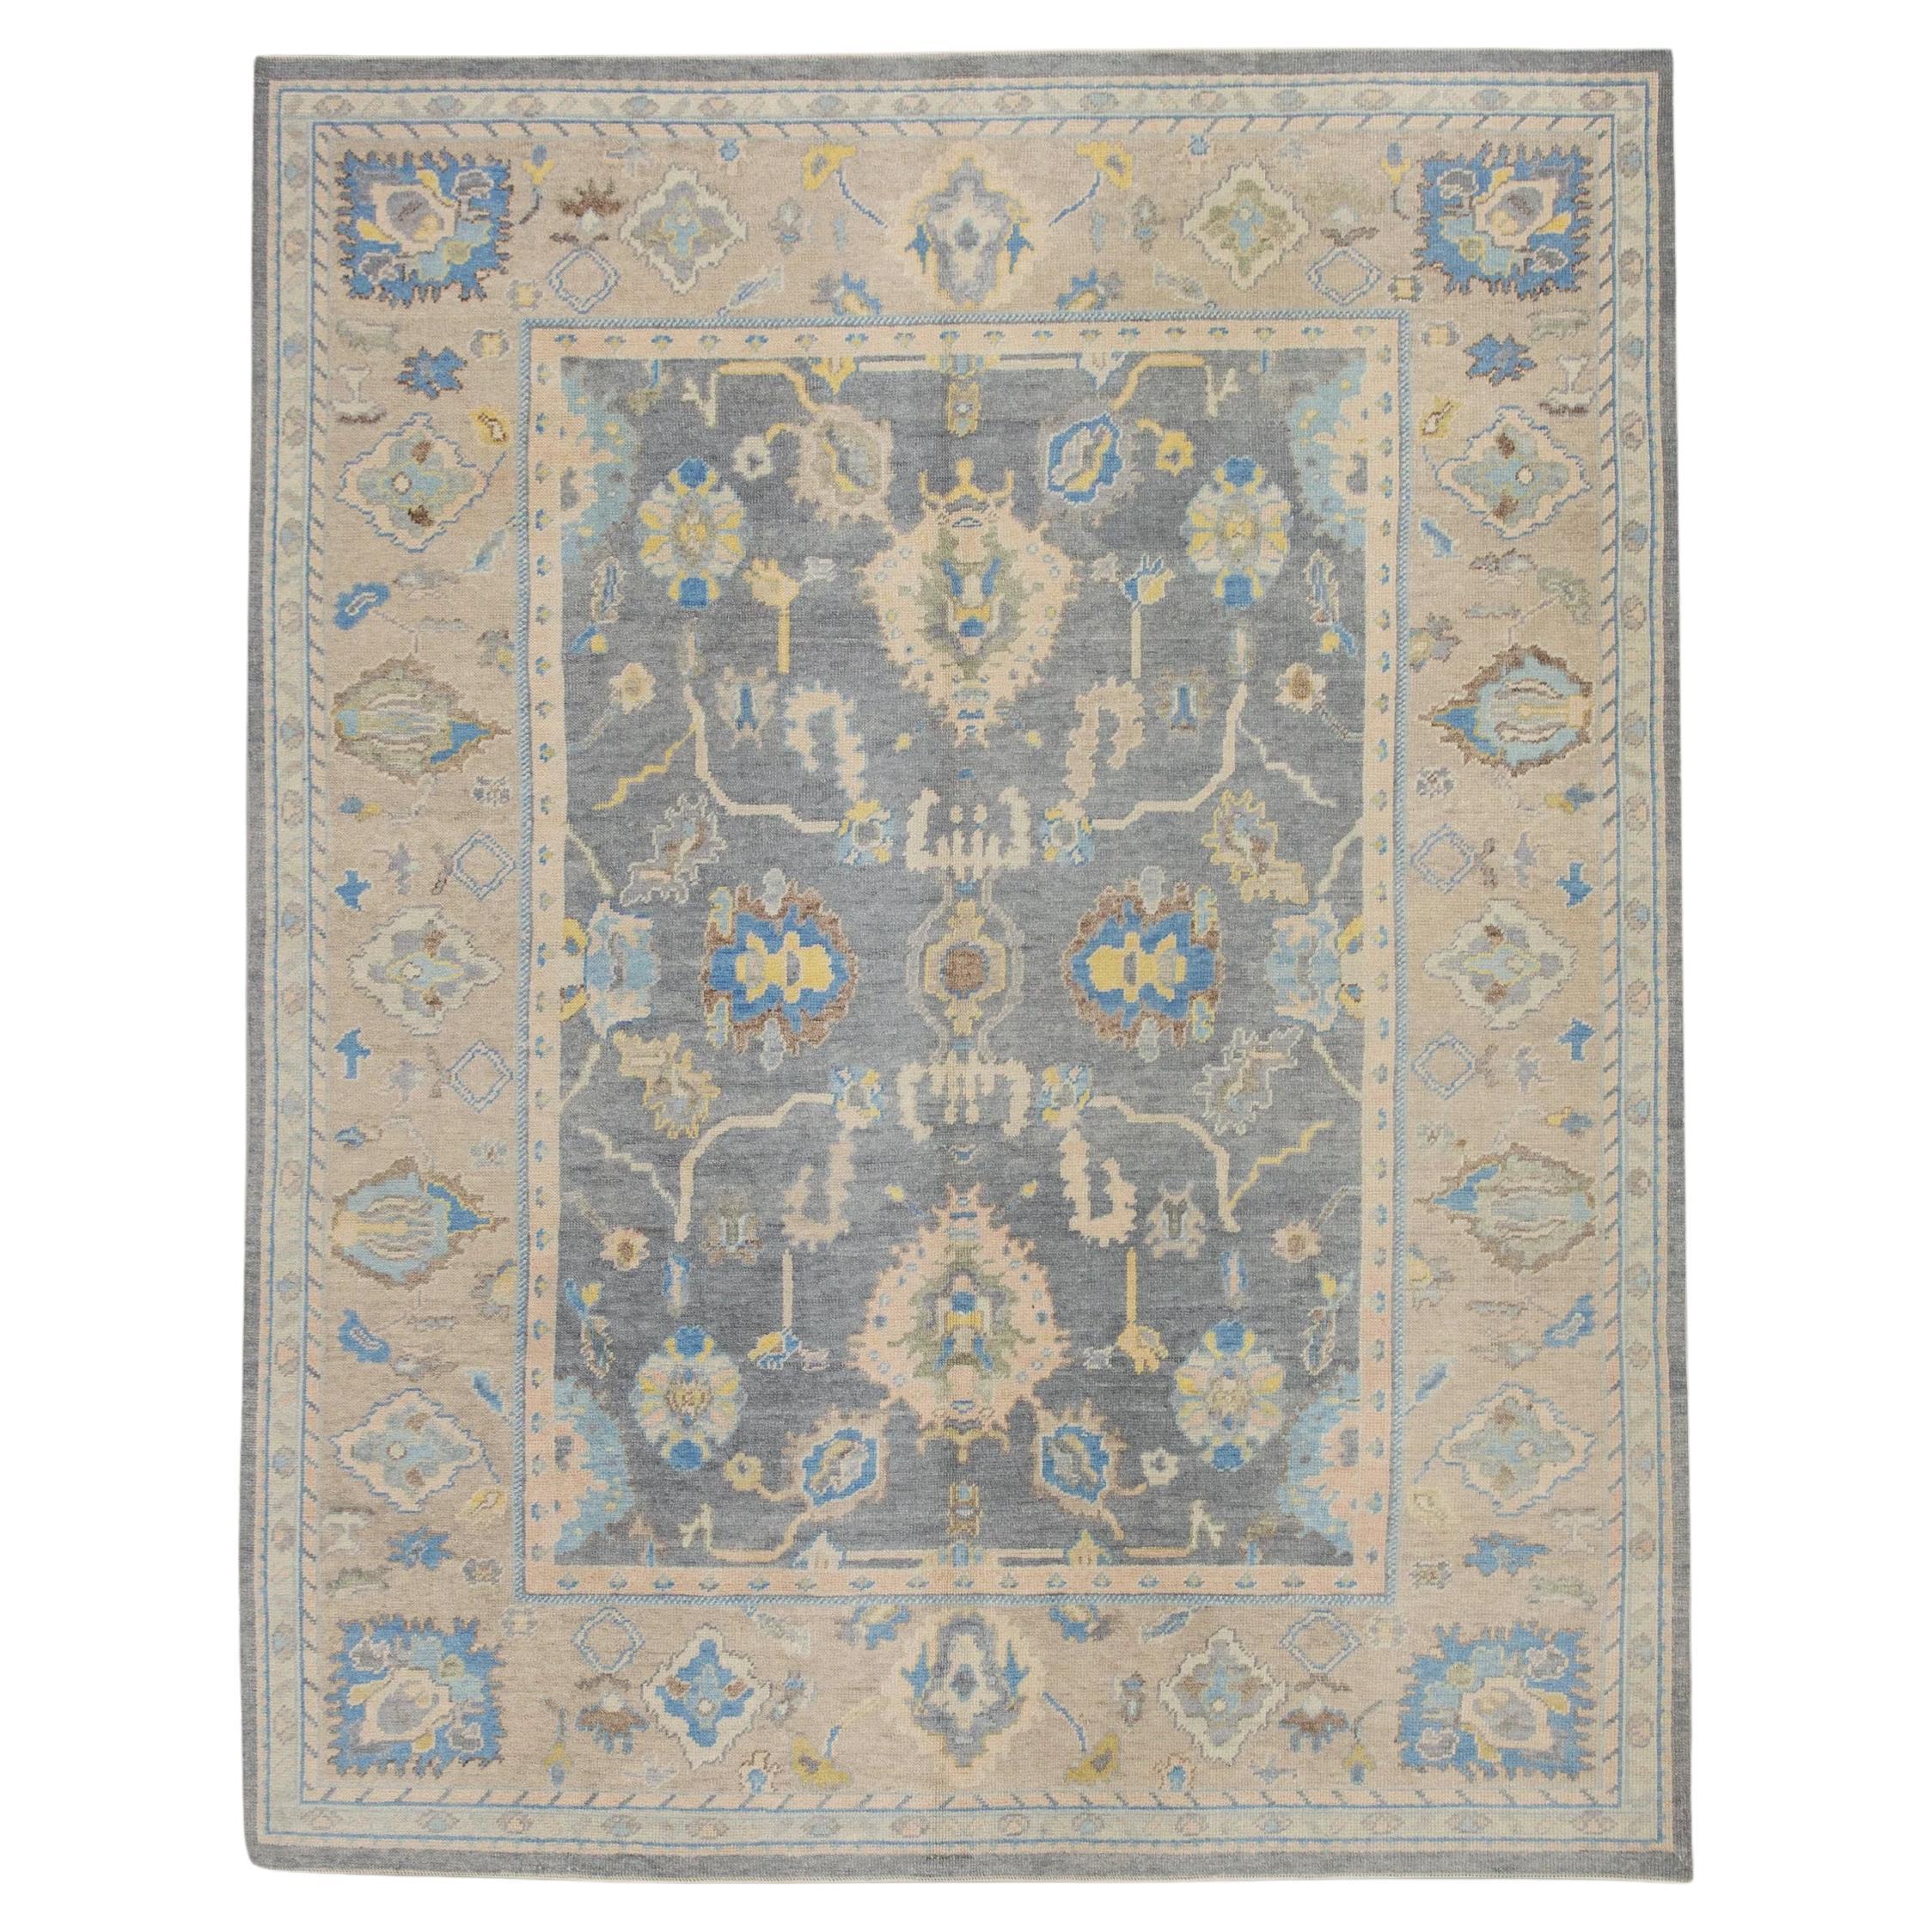 Türkischer Oushak-Teppich aus handgewebter Wolle in Braun und Blau 7'11" x 9'11" mit Blumenmuster